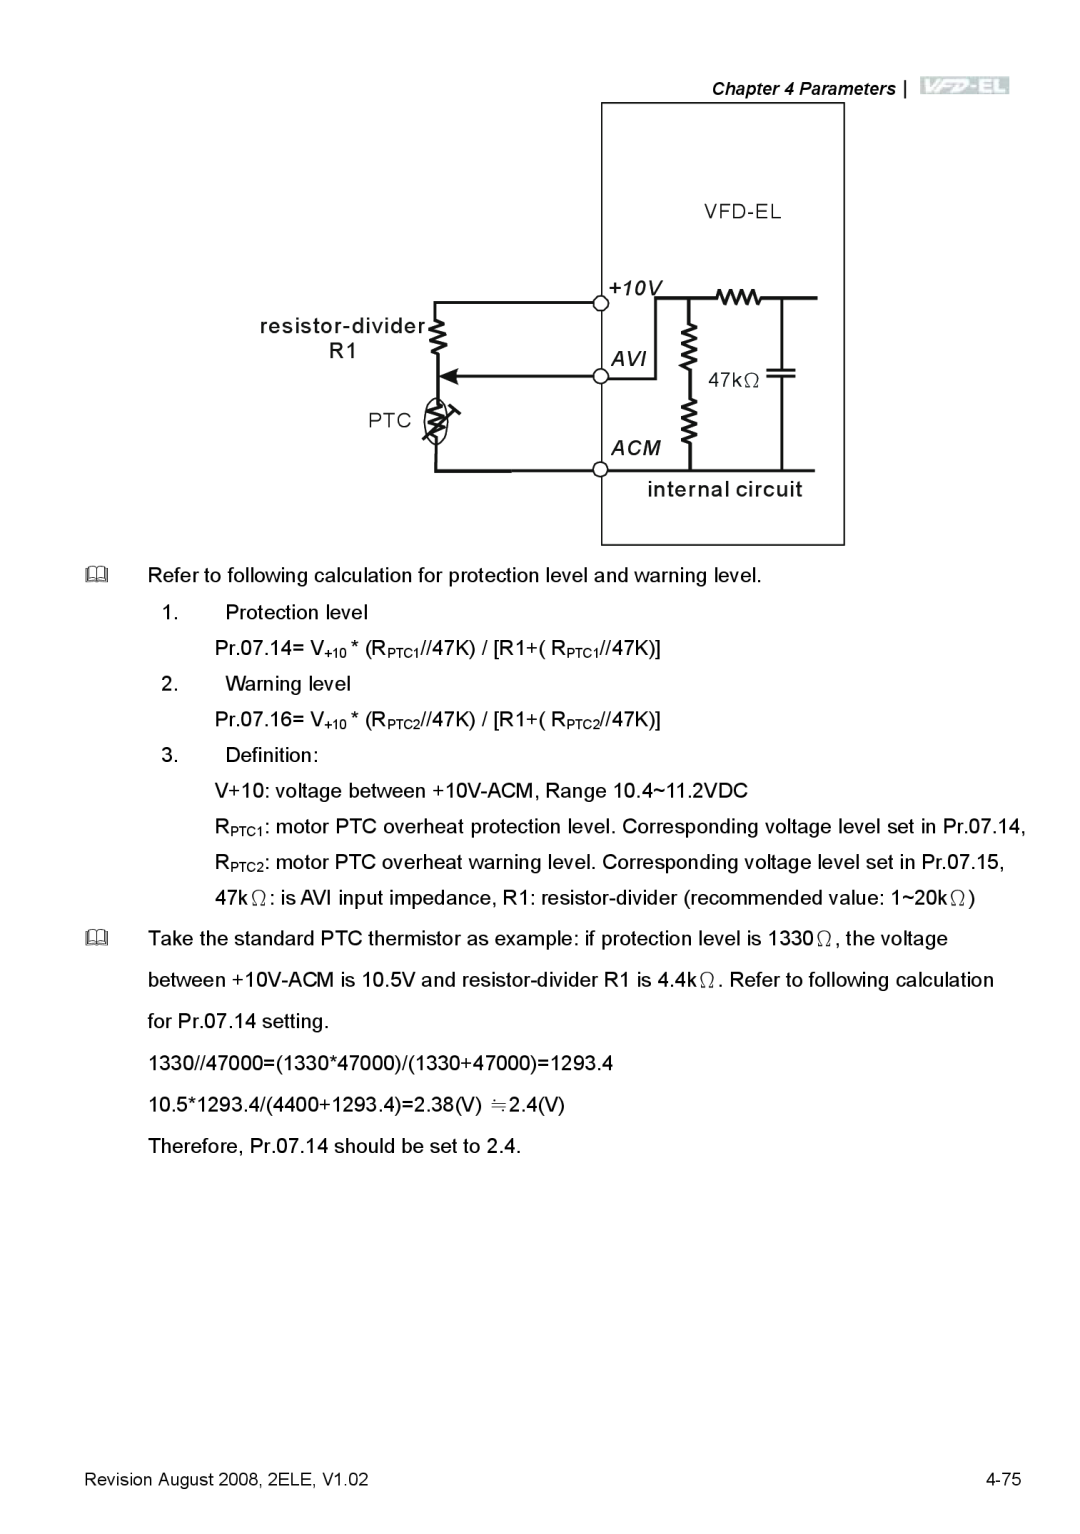 Delta Electronics VFD-EL manual resistor-divider, internal circuit 